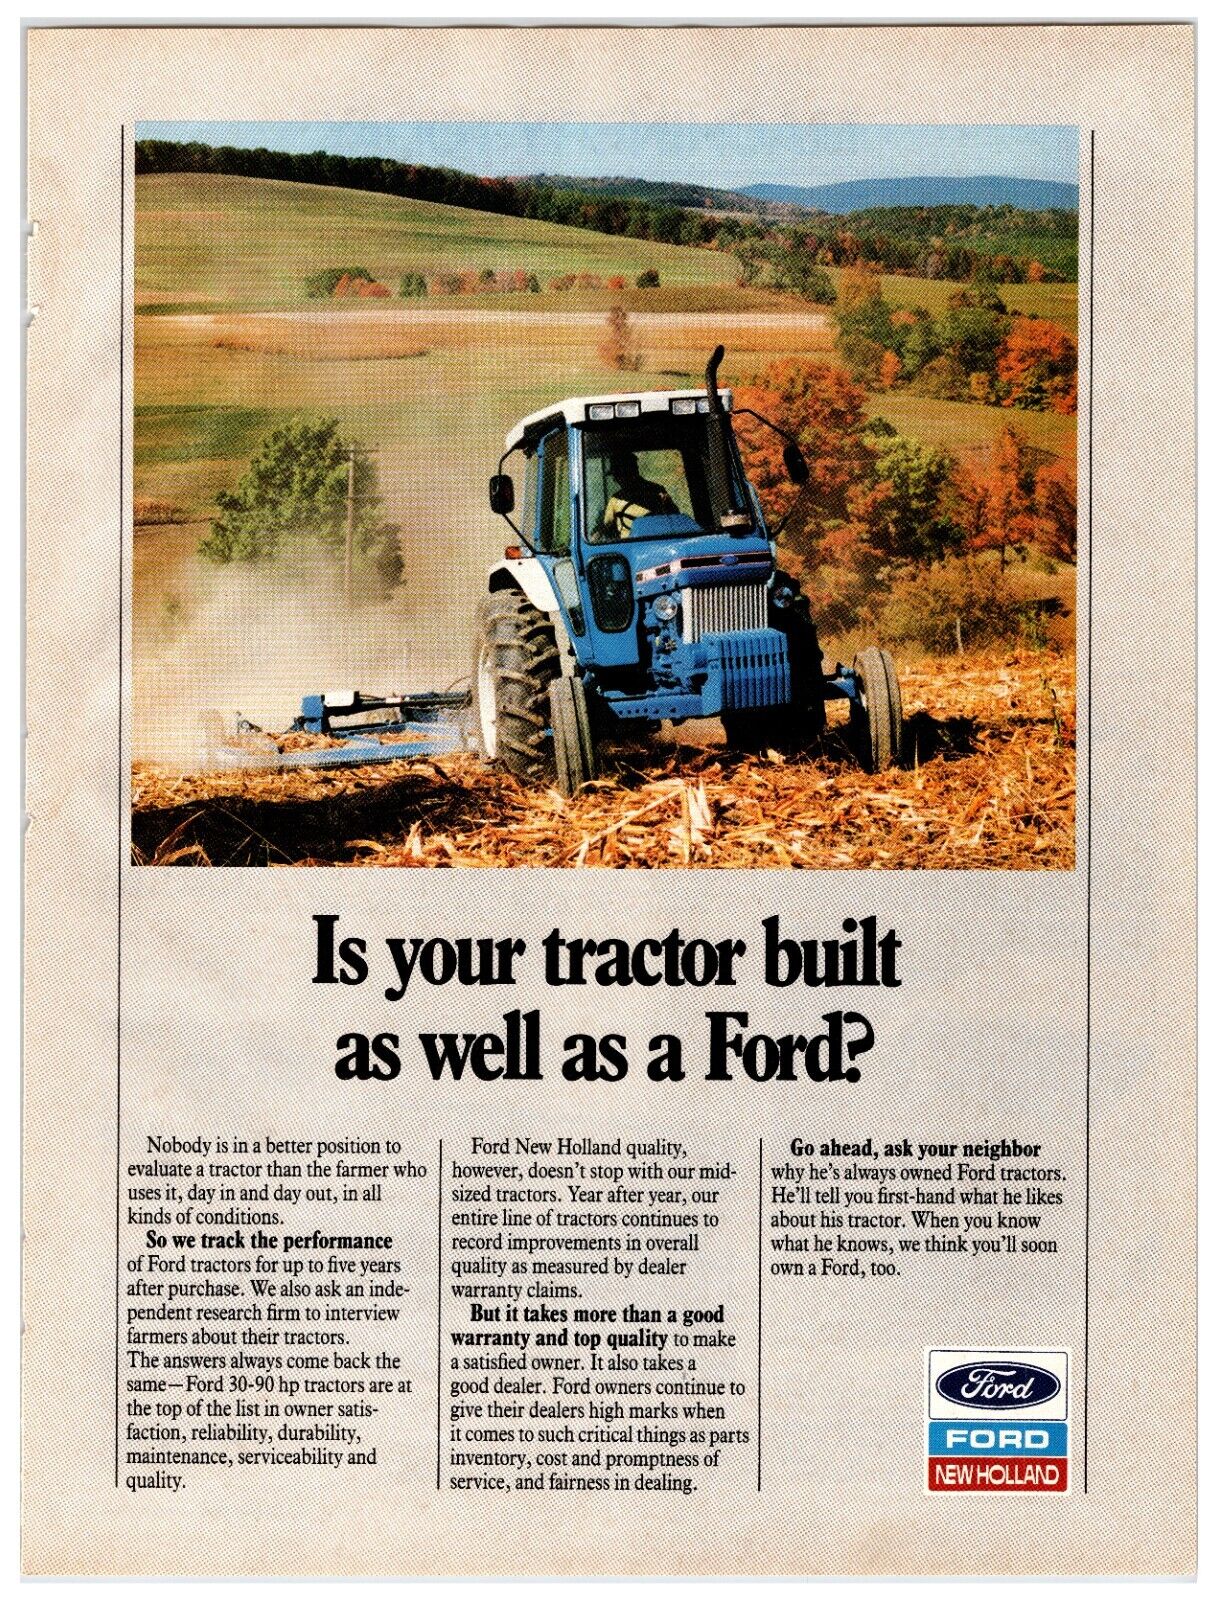 1988 Ford 30 / 90 hp Tractors - Original Print Advertisement (11x8)